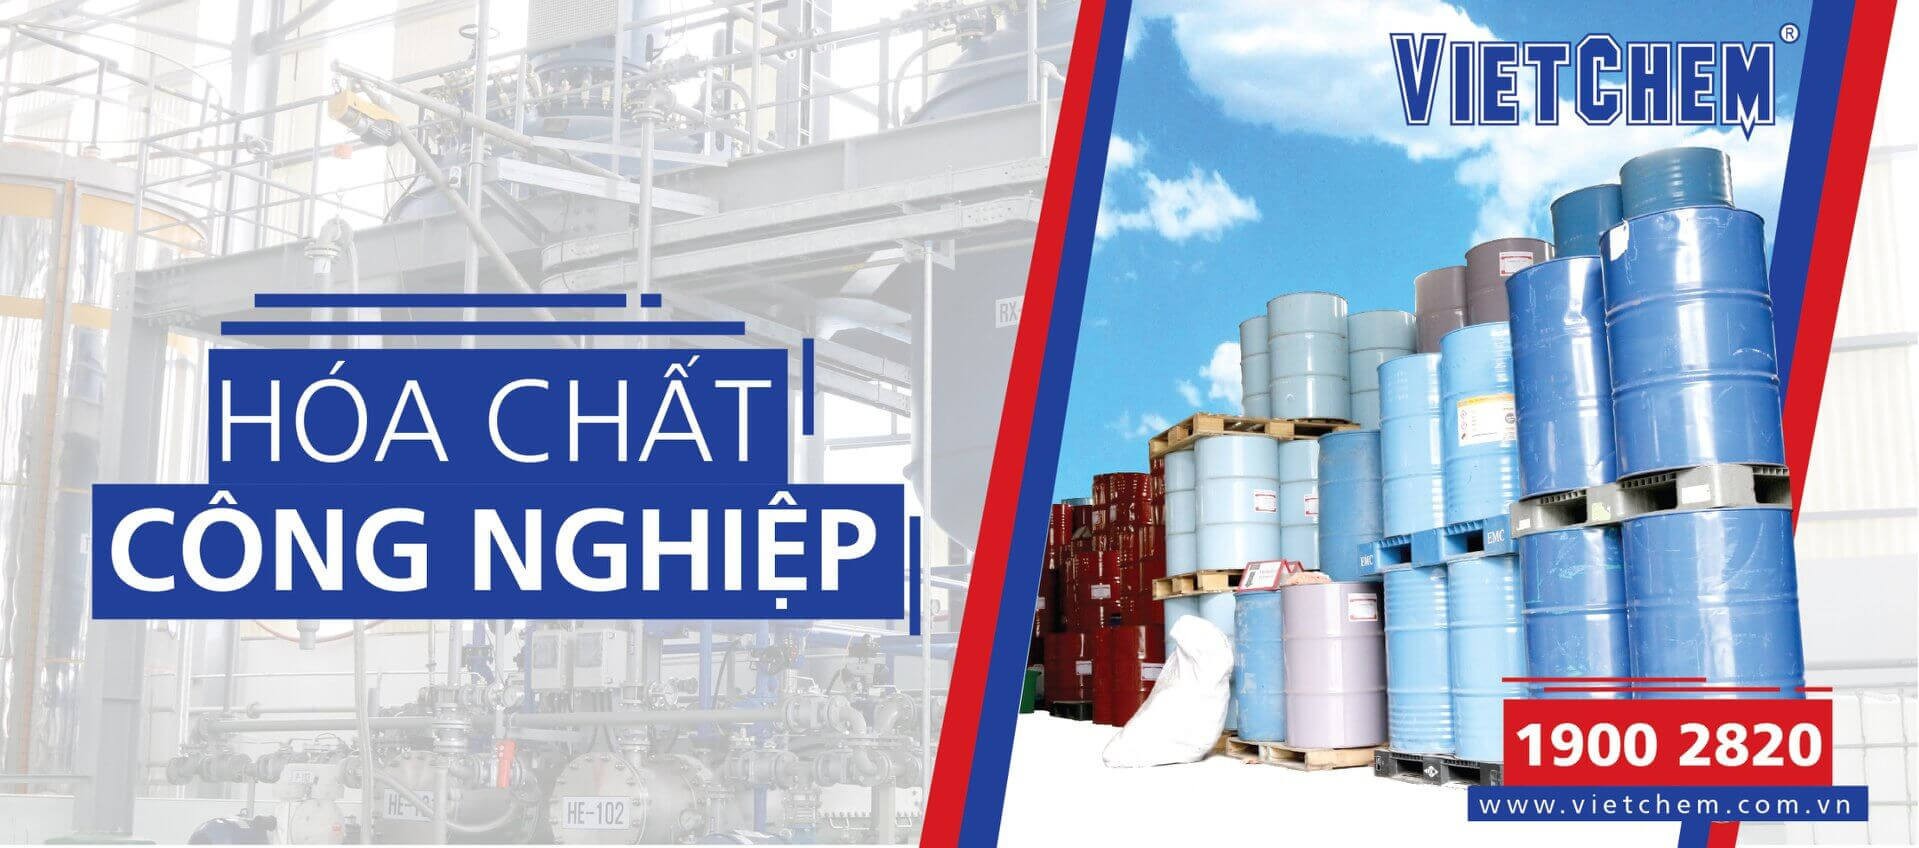 VietChem - Công ty cung cấp hóa chất bảo trì uy tín, chất lượng hàng đầu